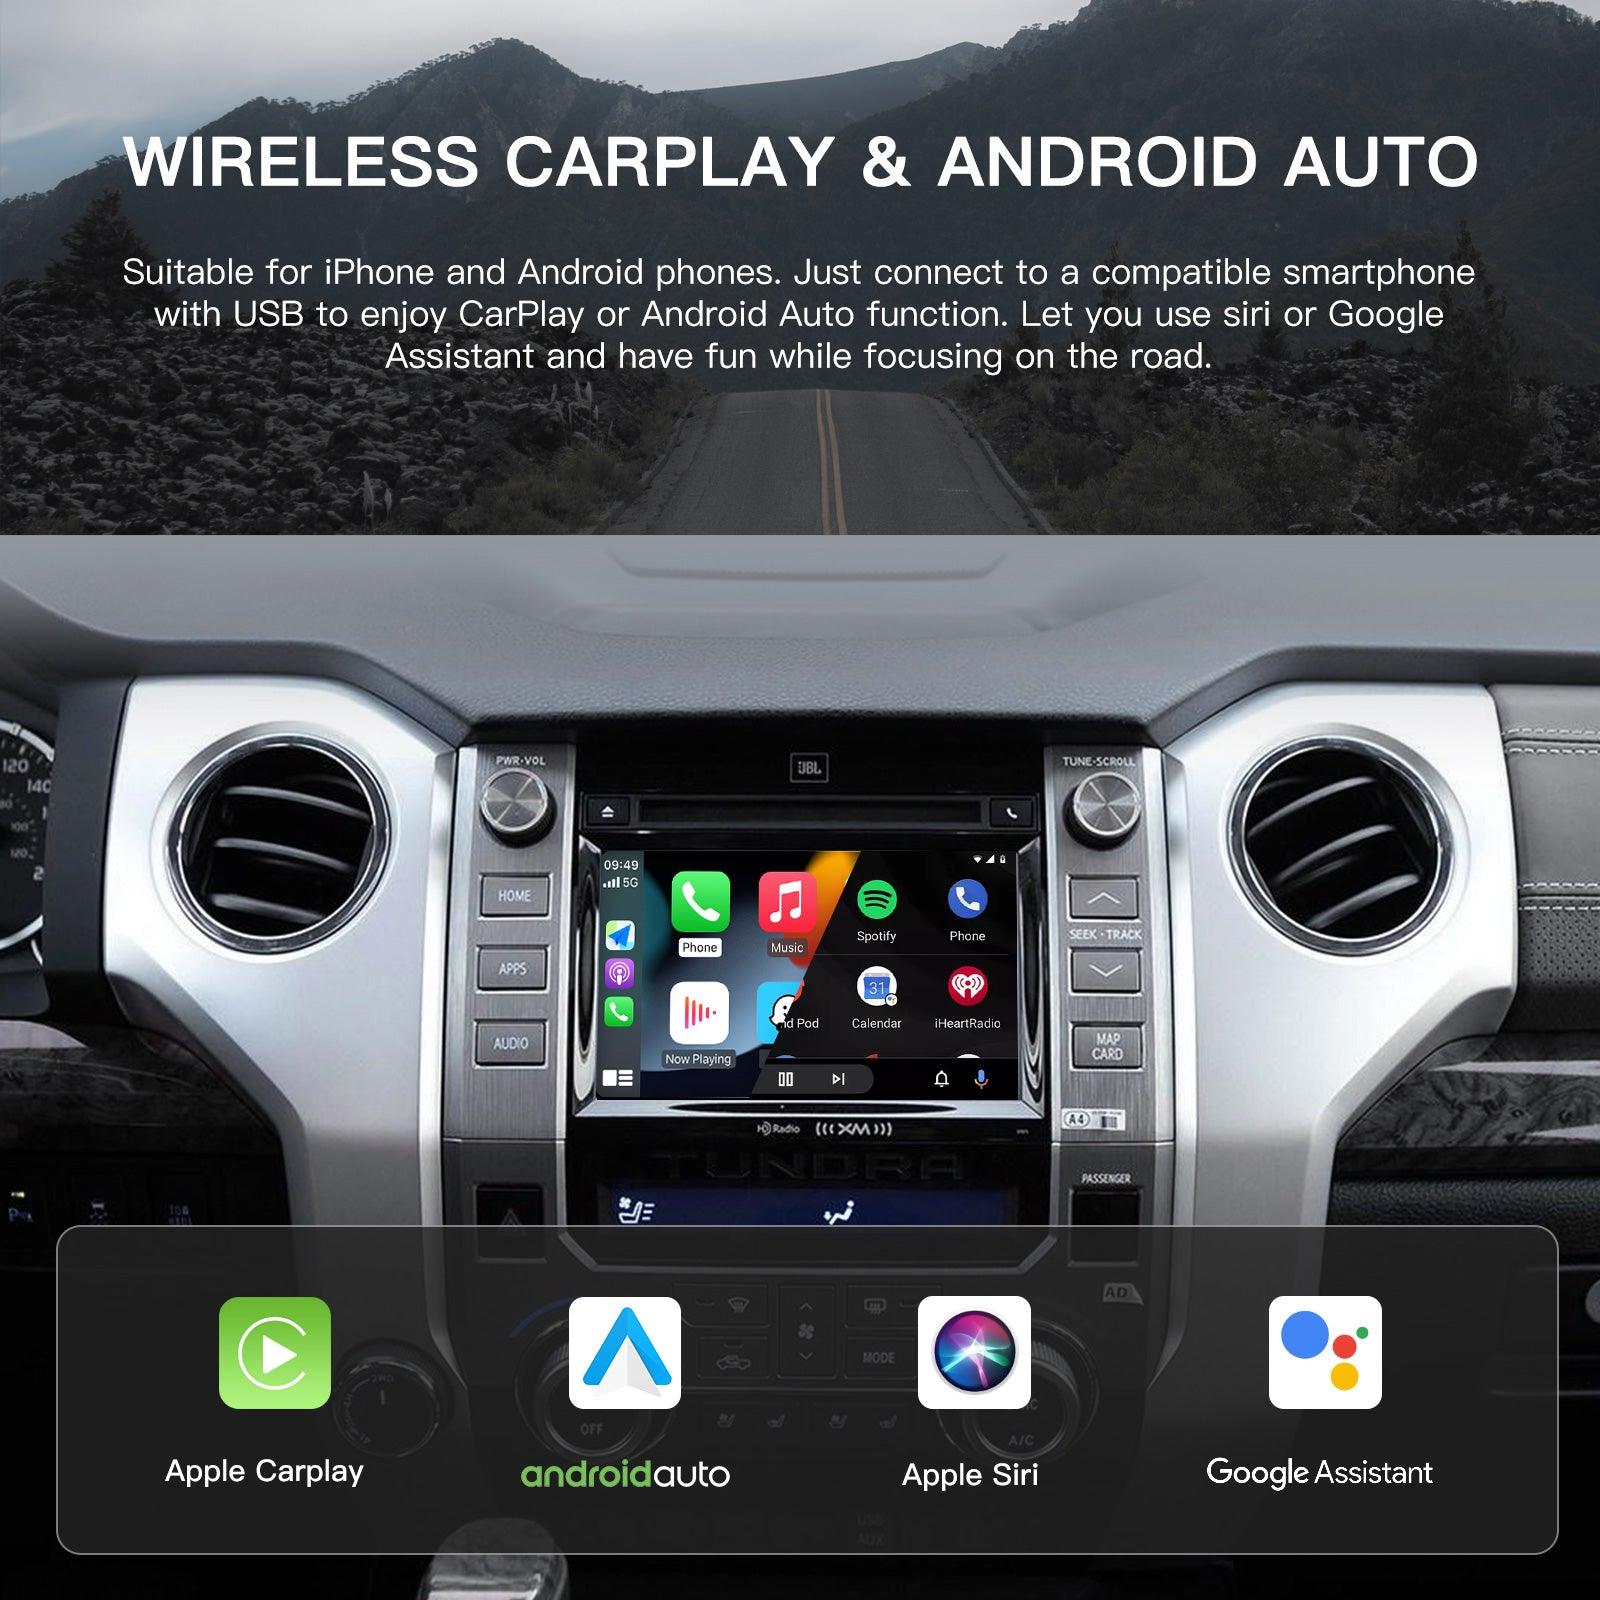 Kabelloses Apple CarPlay, Nachrüstung für Audi, Android Auto, Decoder, Integration